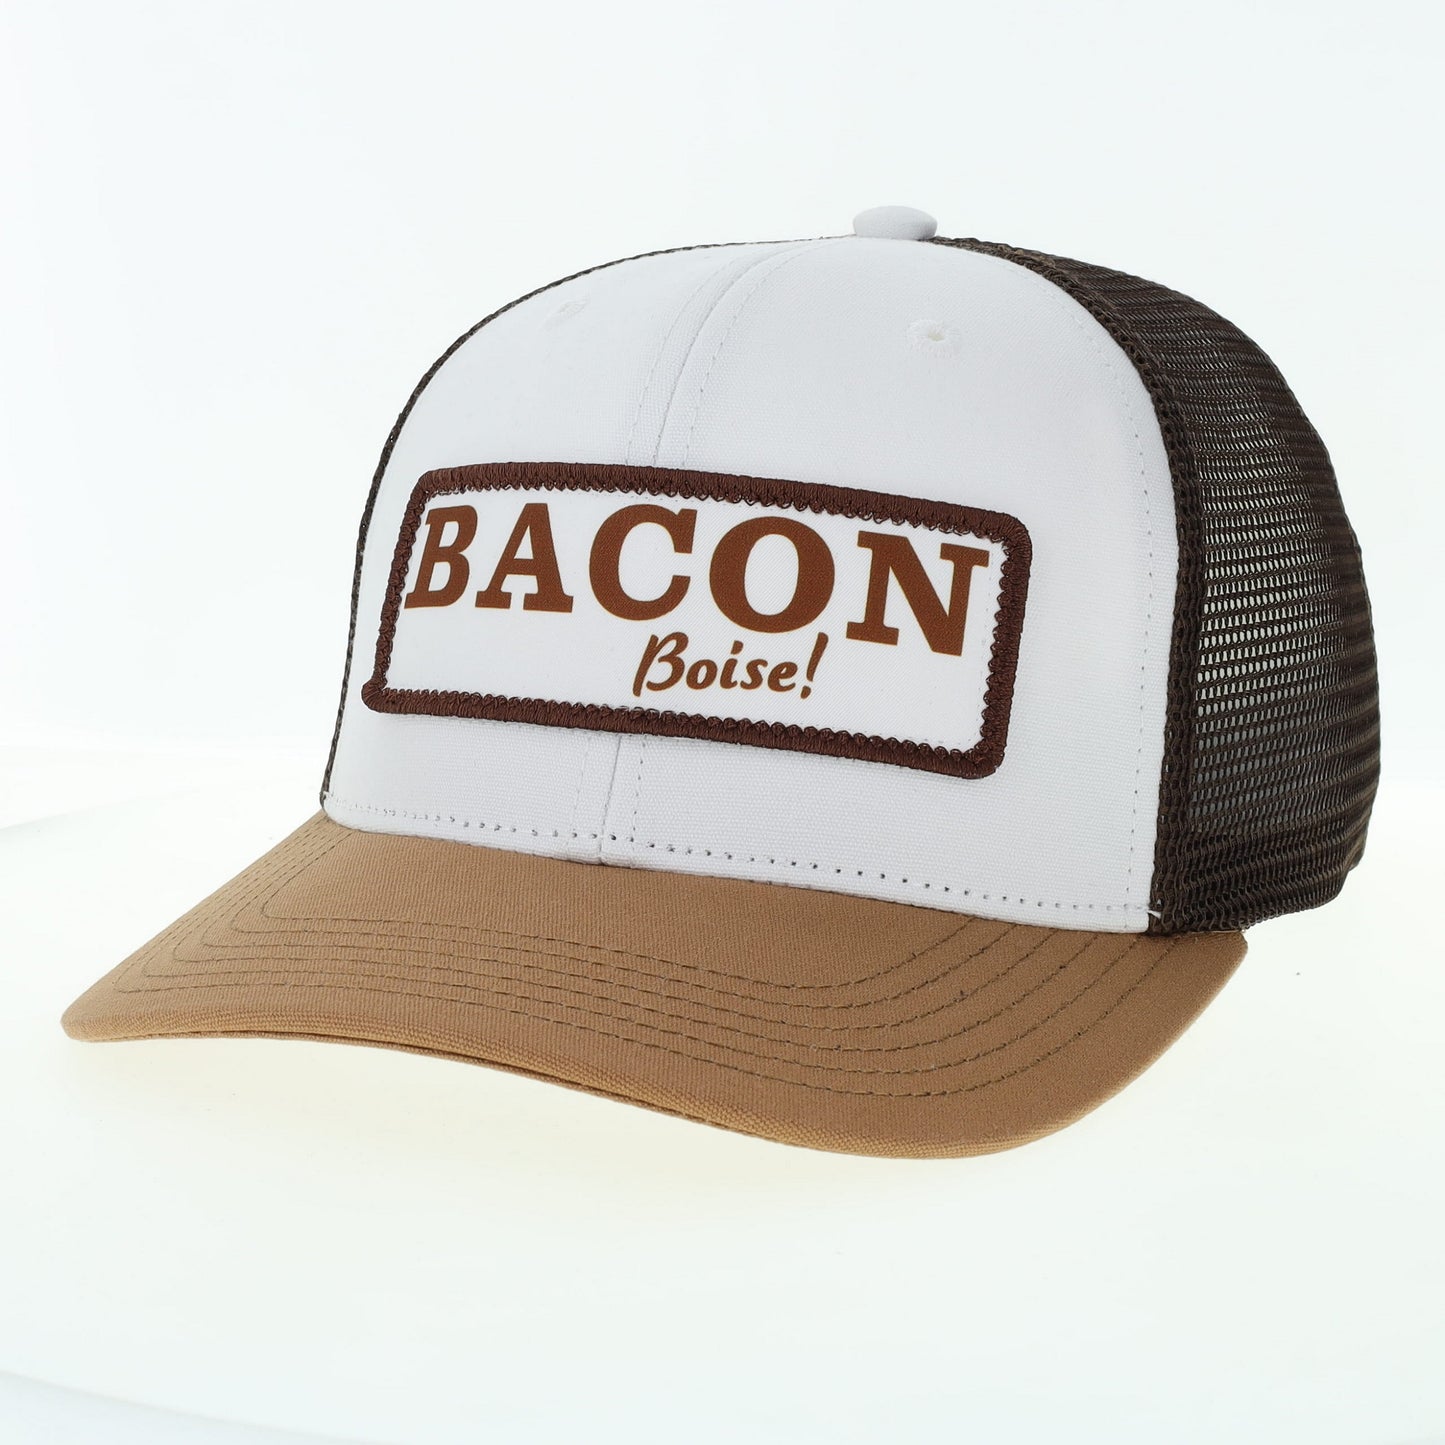 Bacon Boise Snapback - BACON Boise